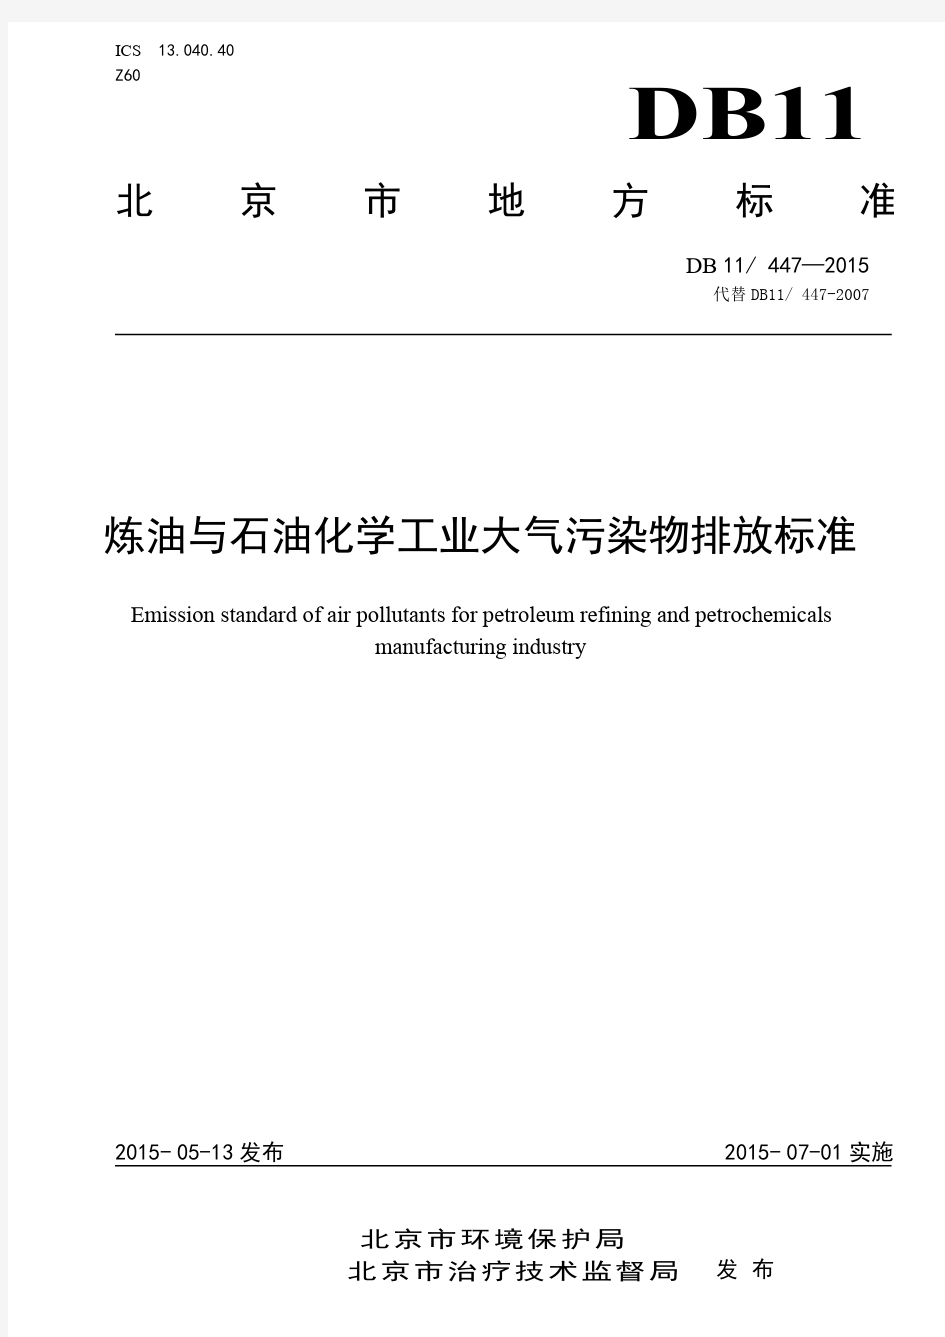 最新北京市炼油与石油化学工业大气污染物排放标准DB11 47-2015